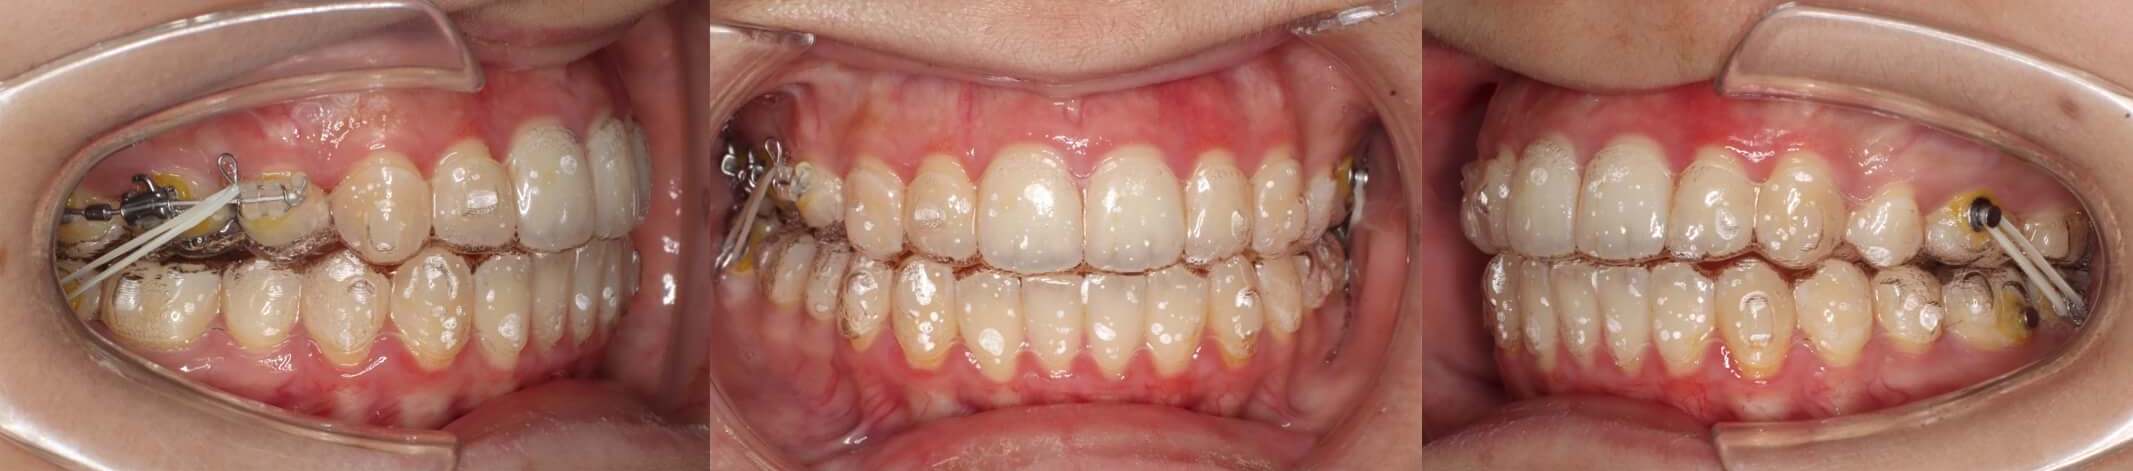 インビザライン抜歯・失敗リカバリー治療